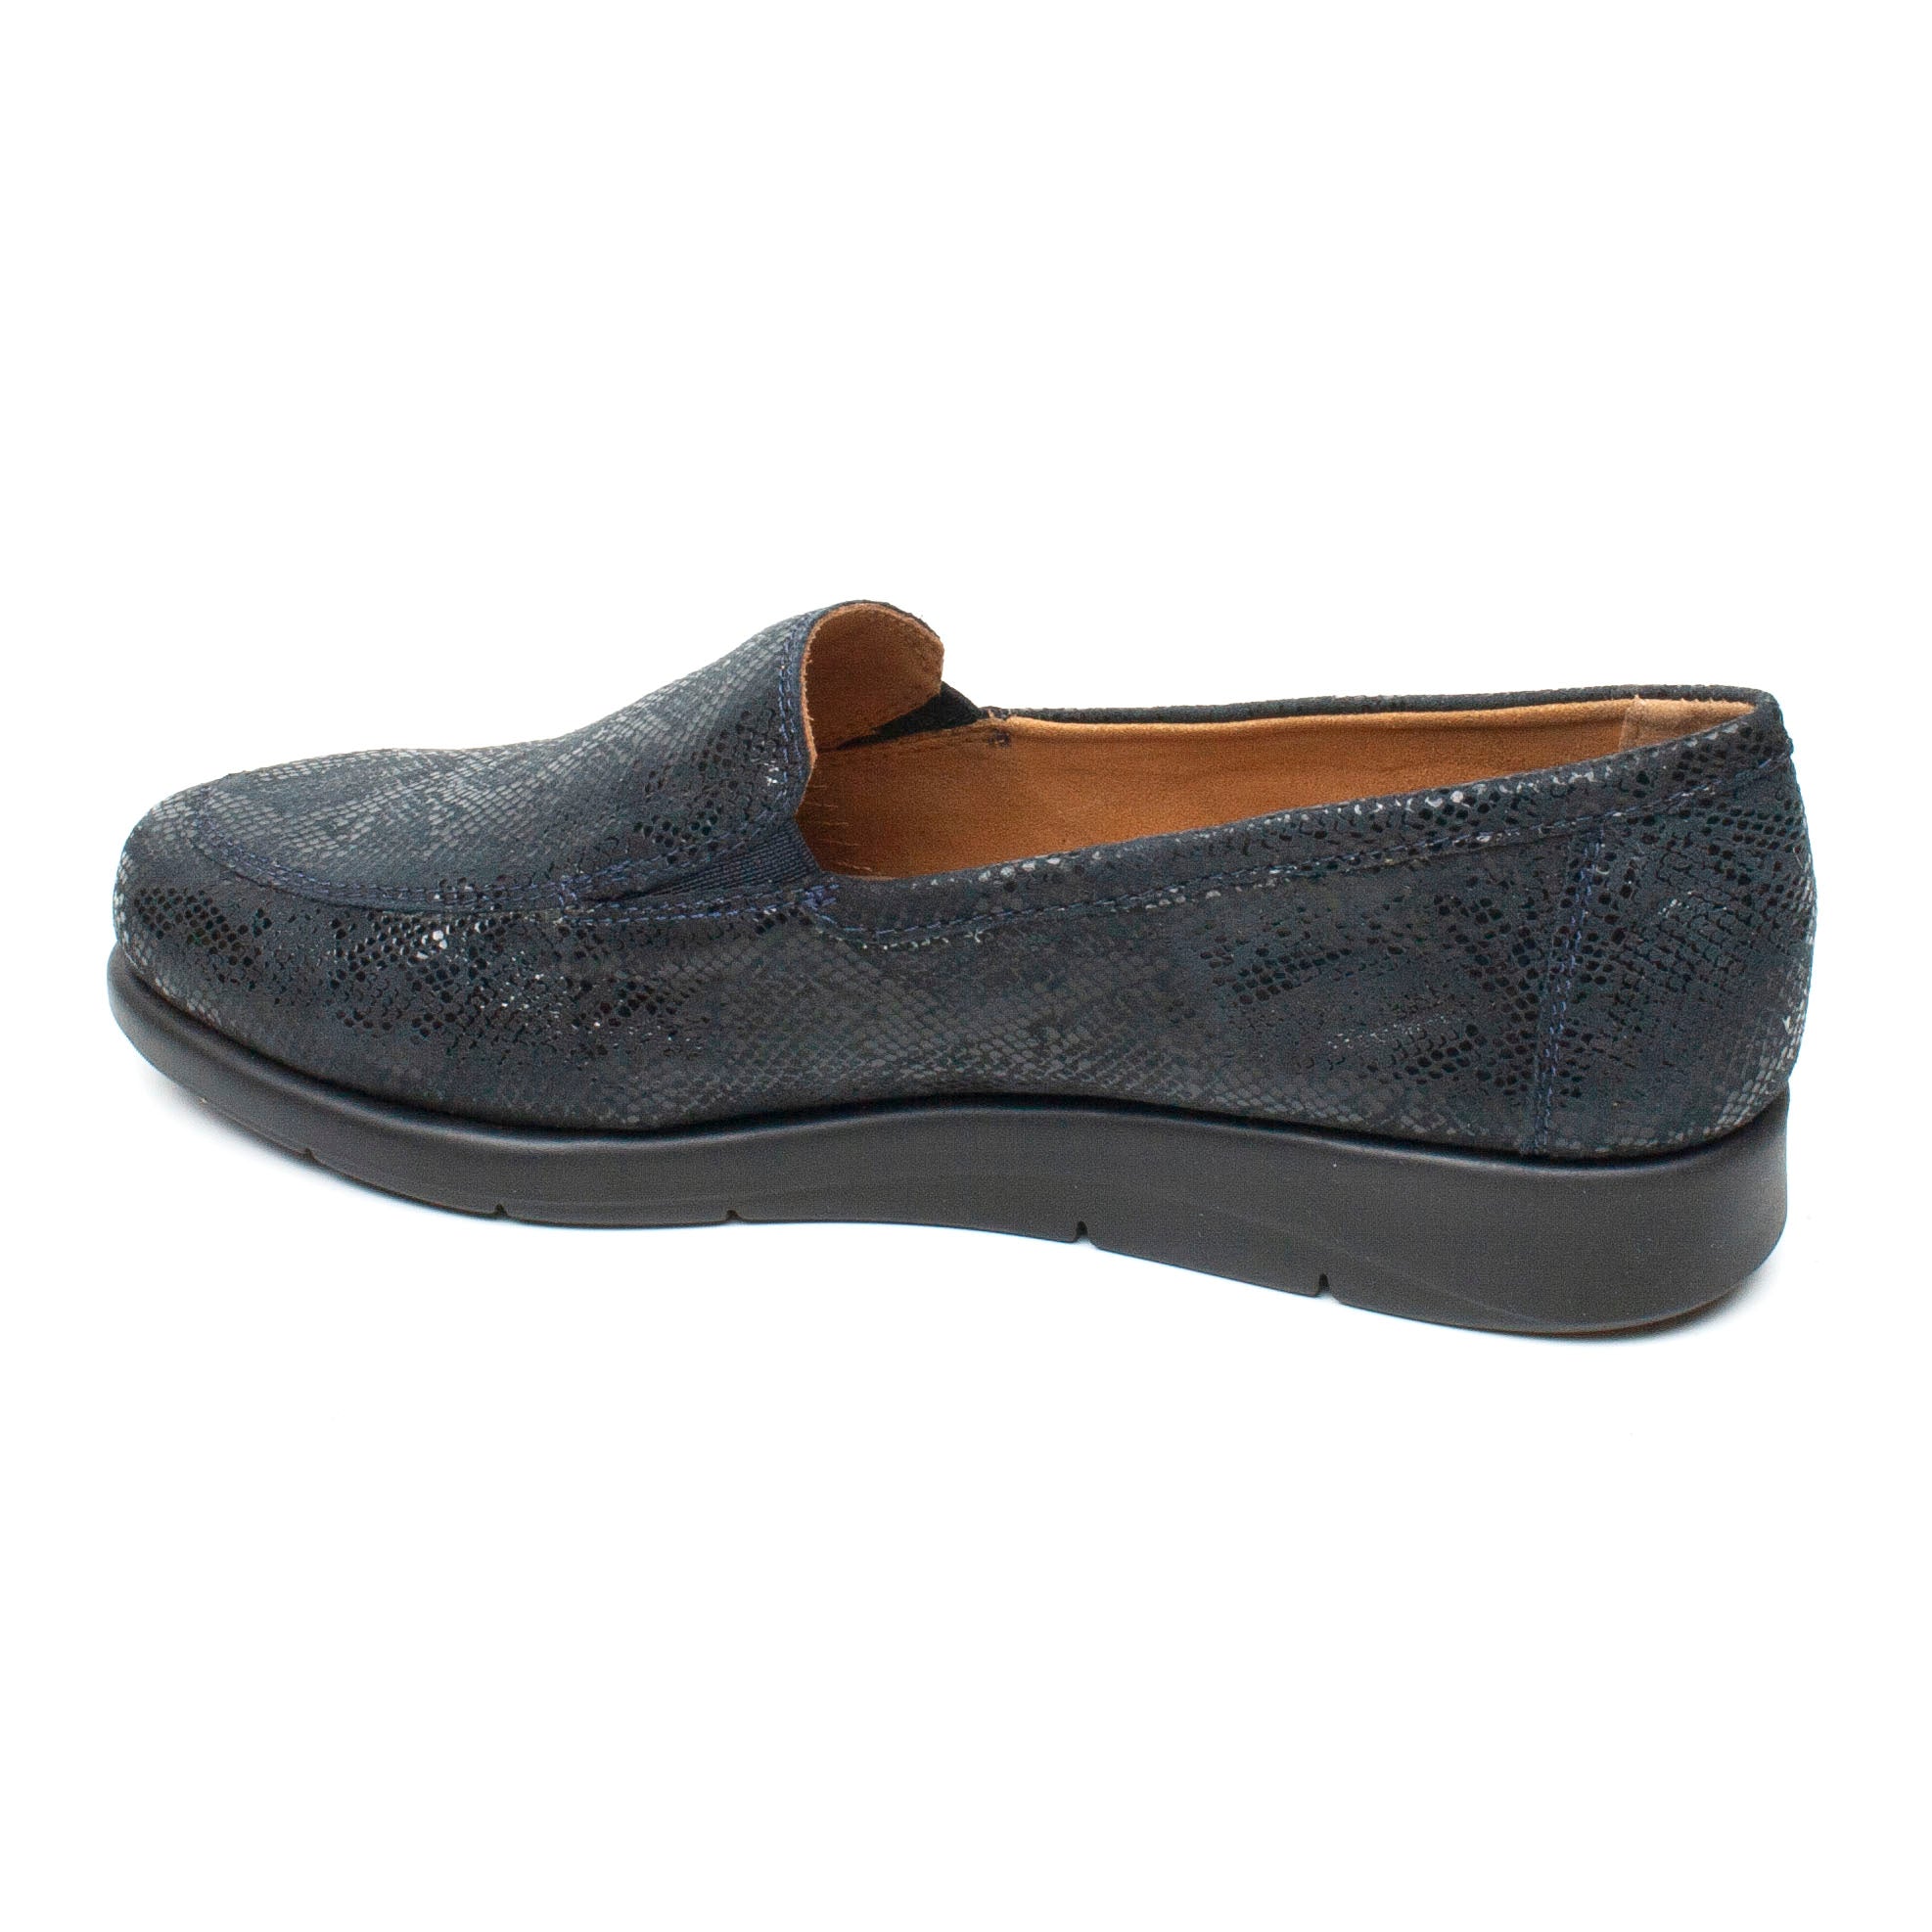 Caprice Pantofi dama bleumarin ID2173-BLM